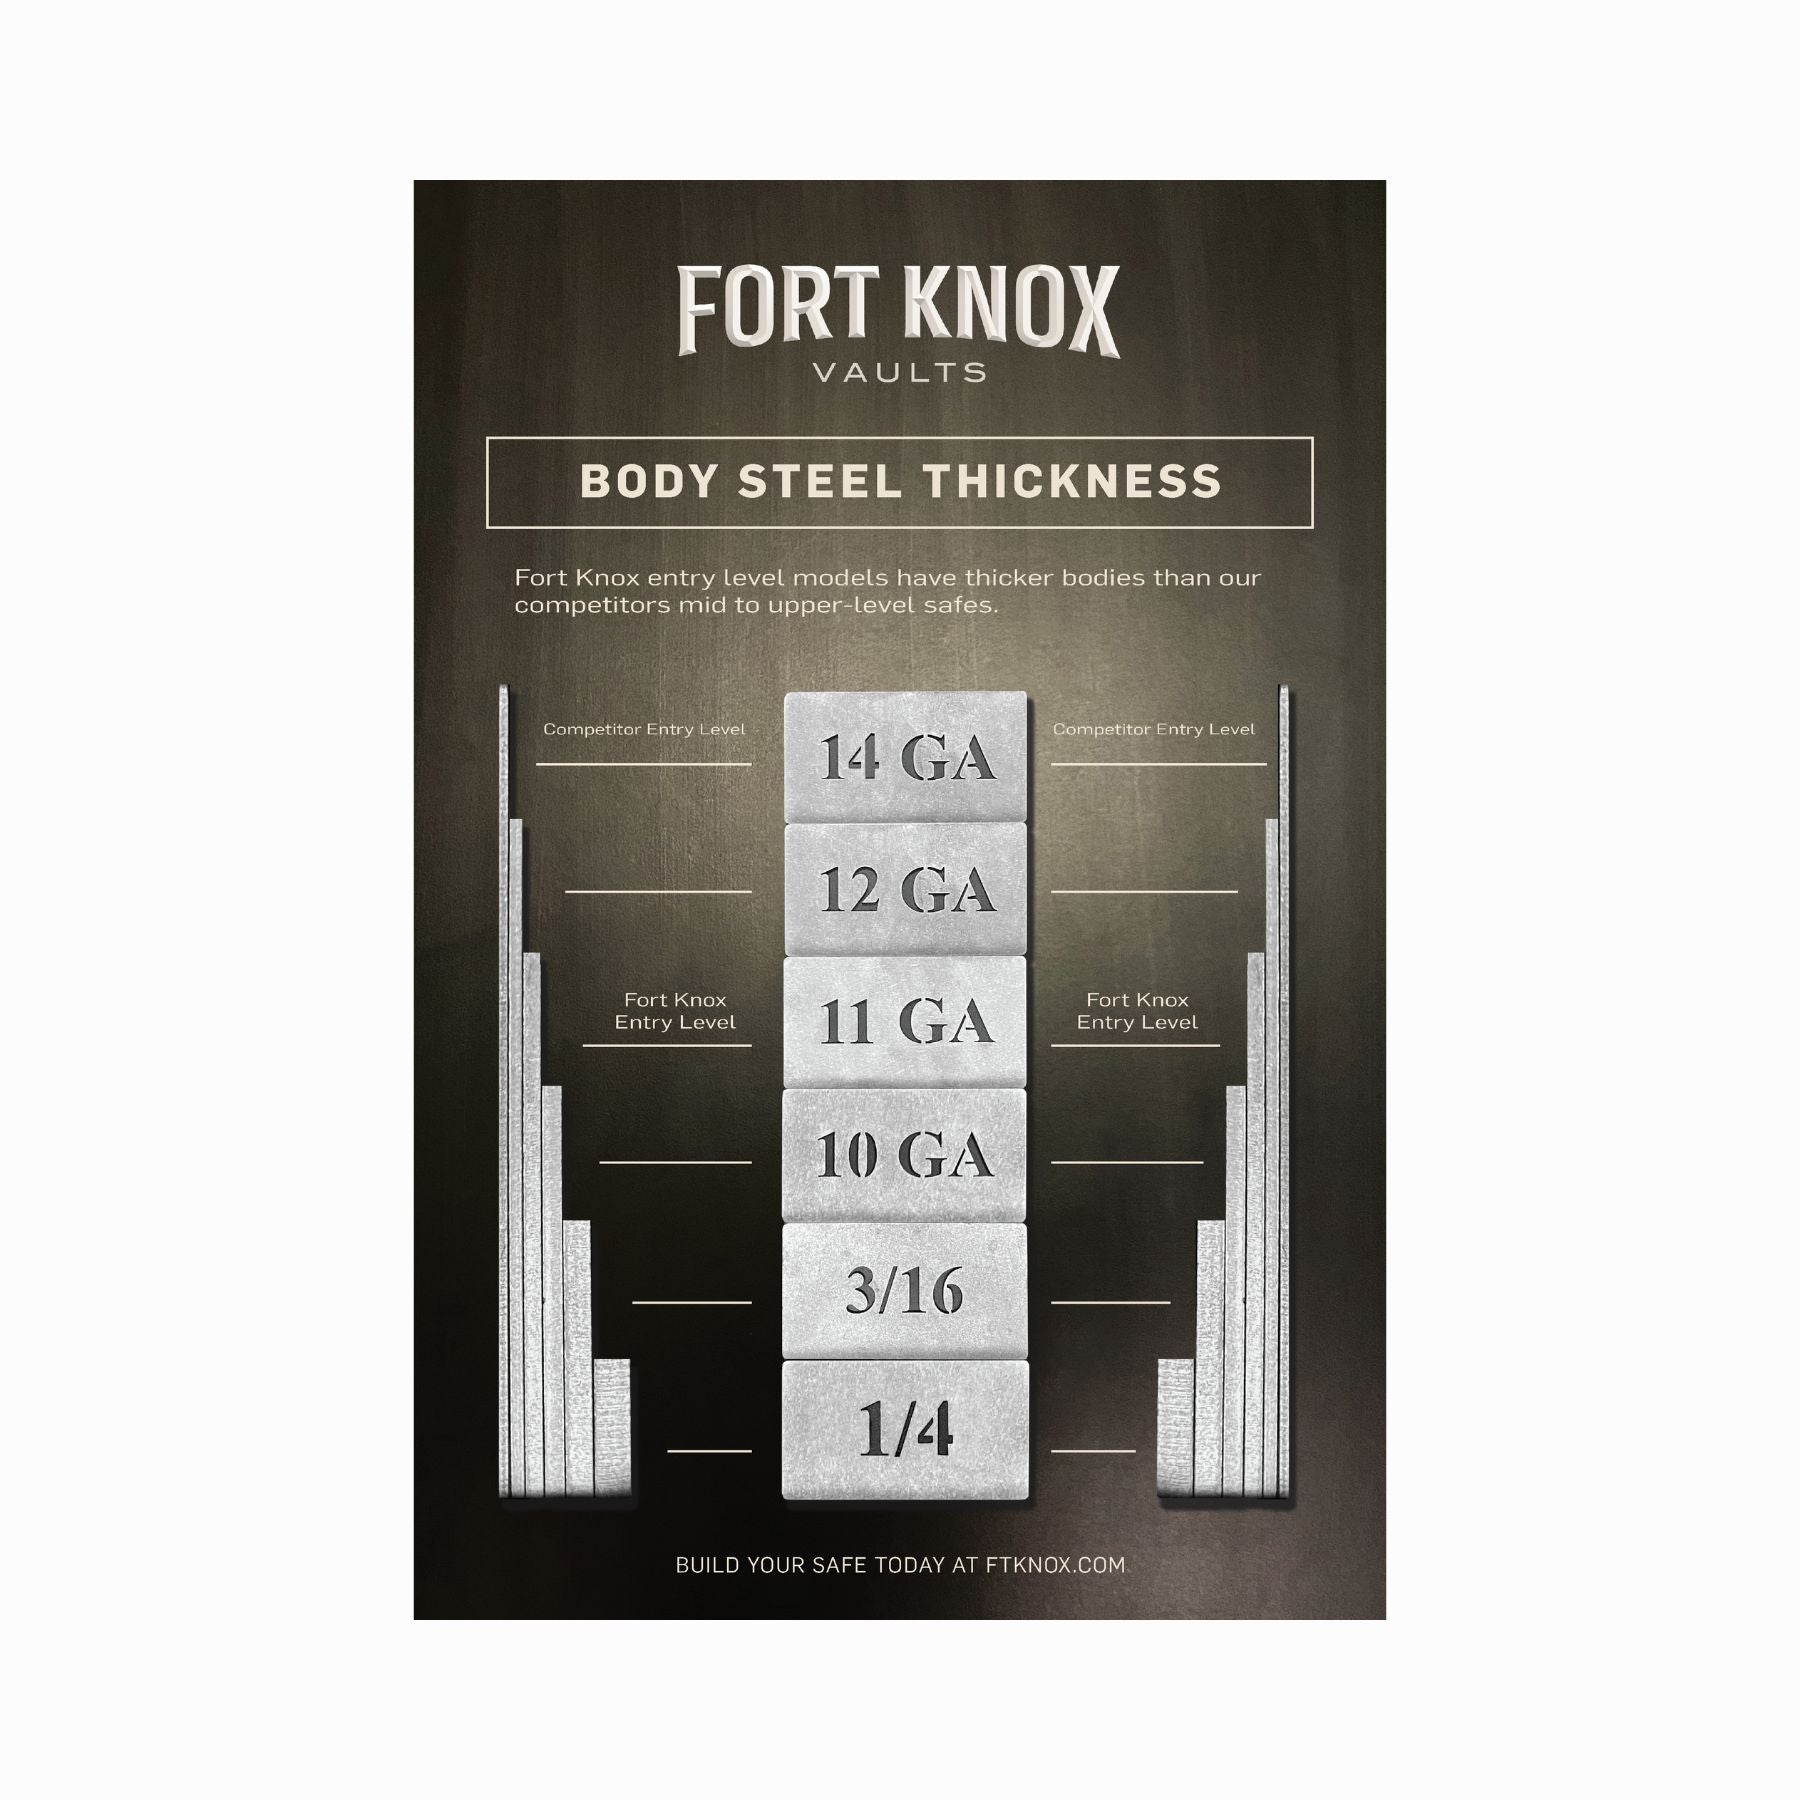 Fort Knox Spartan 6637 Gun Safe